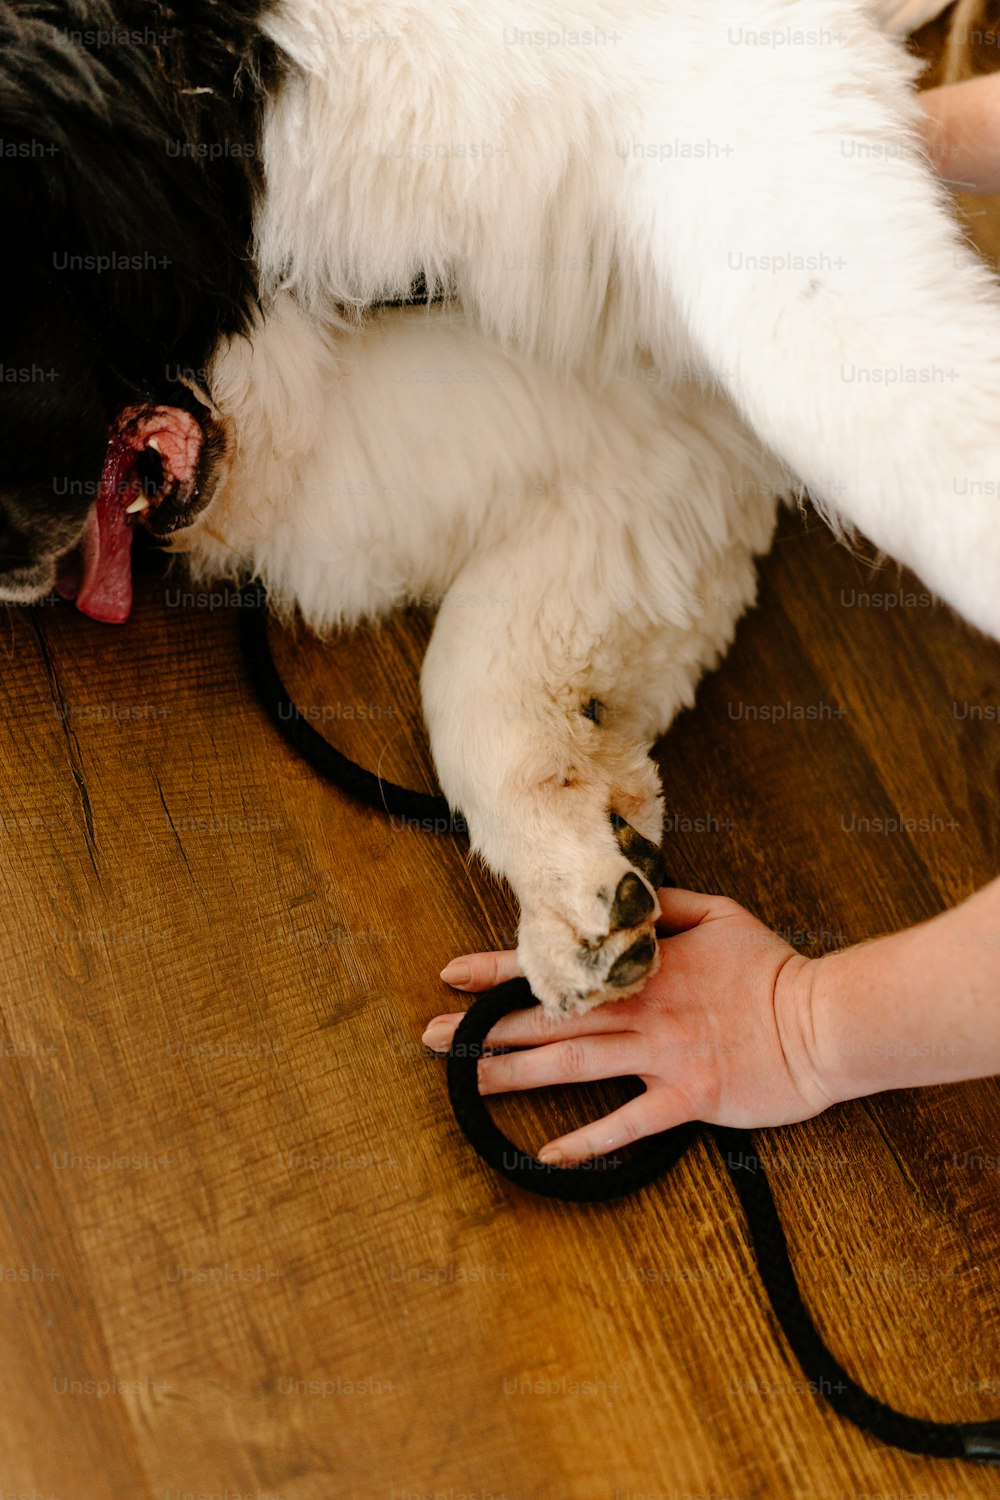 ein Hund, der auf einem Holzboden liegt und von der Hand einer Person gehalten wird